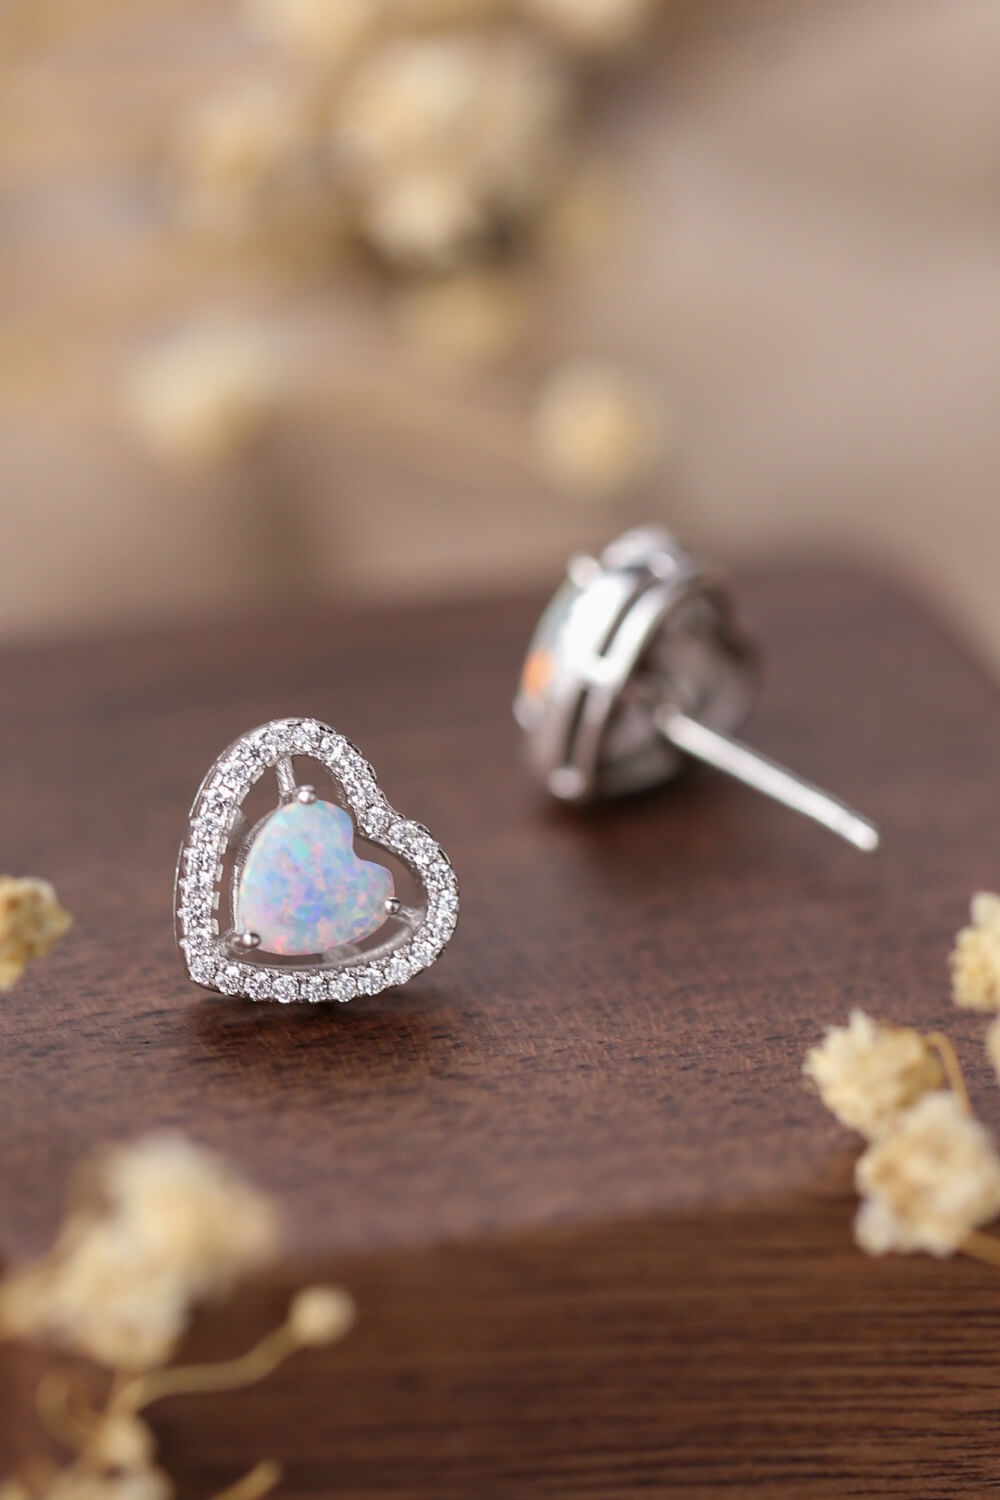 925 Sterling Silver Opal Heart Stud Earrings - Shop women apparel, Jewelry, bath & beauty products online - Arwen's Boutique